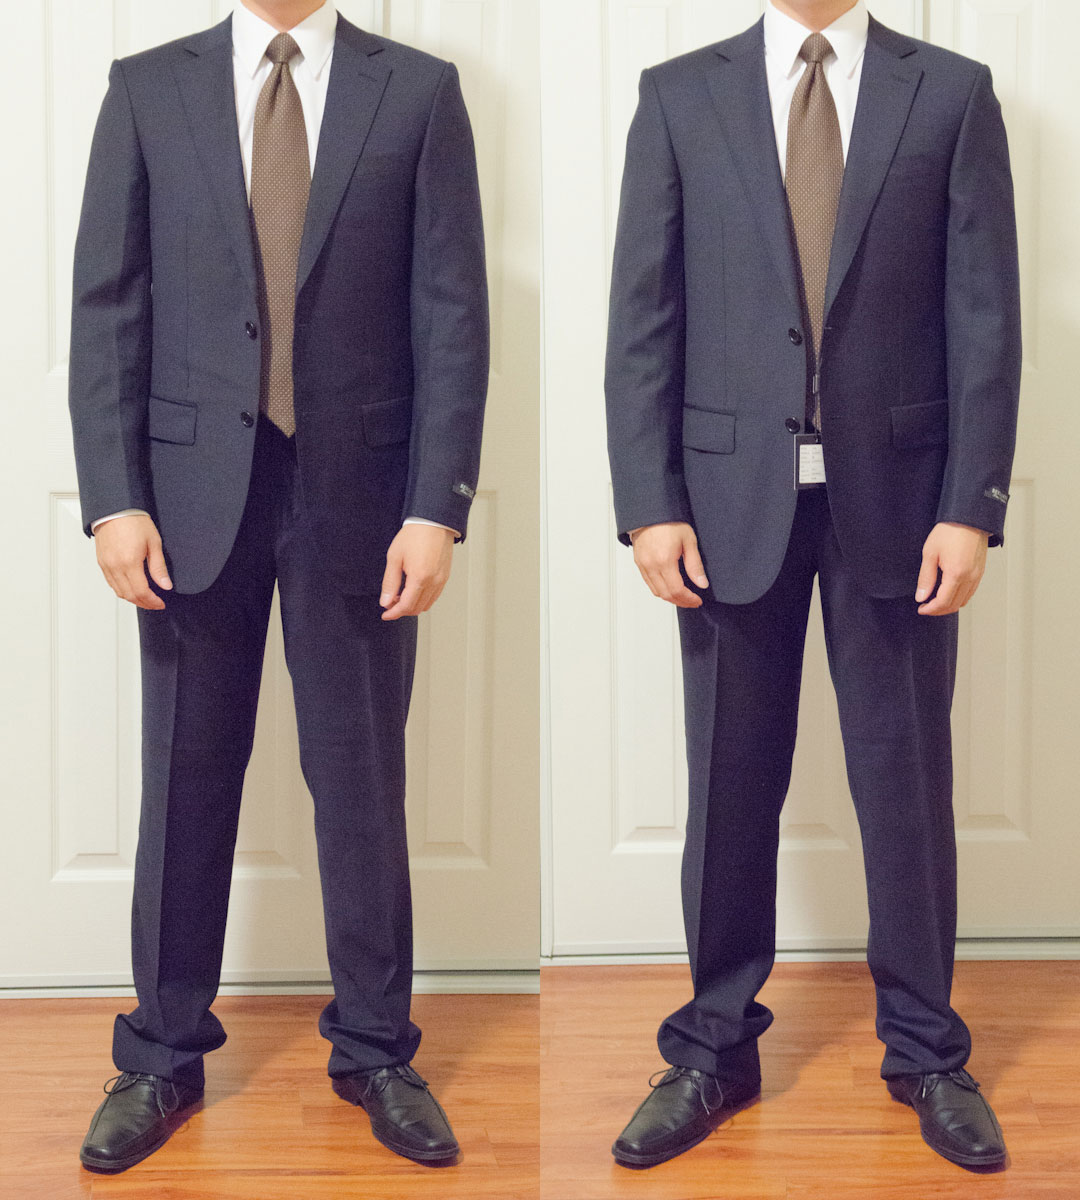 Suit Fit Critique Between 2 Sizes | Styleforum